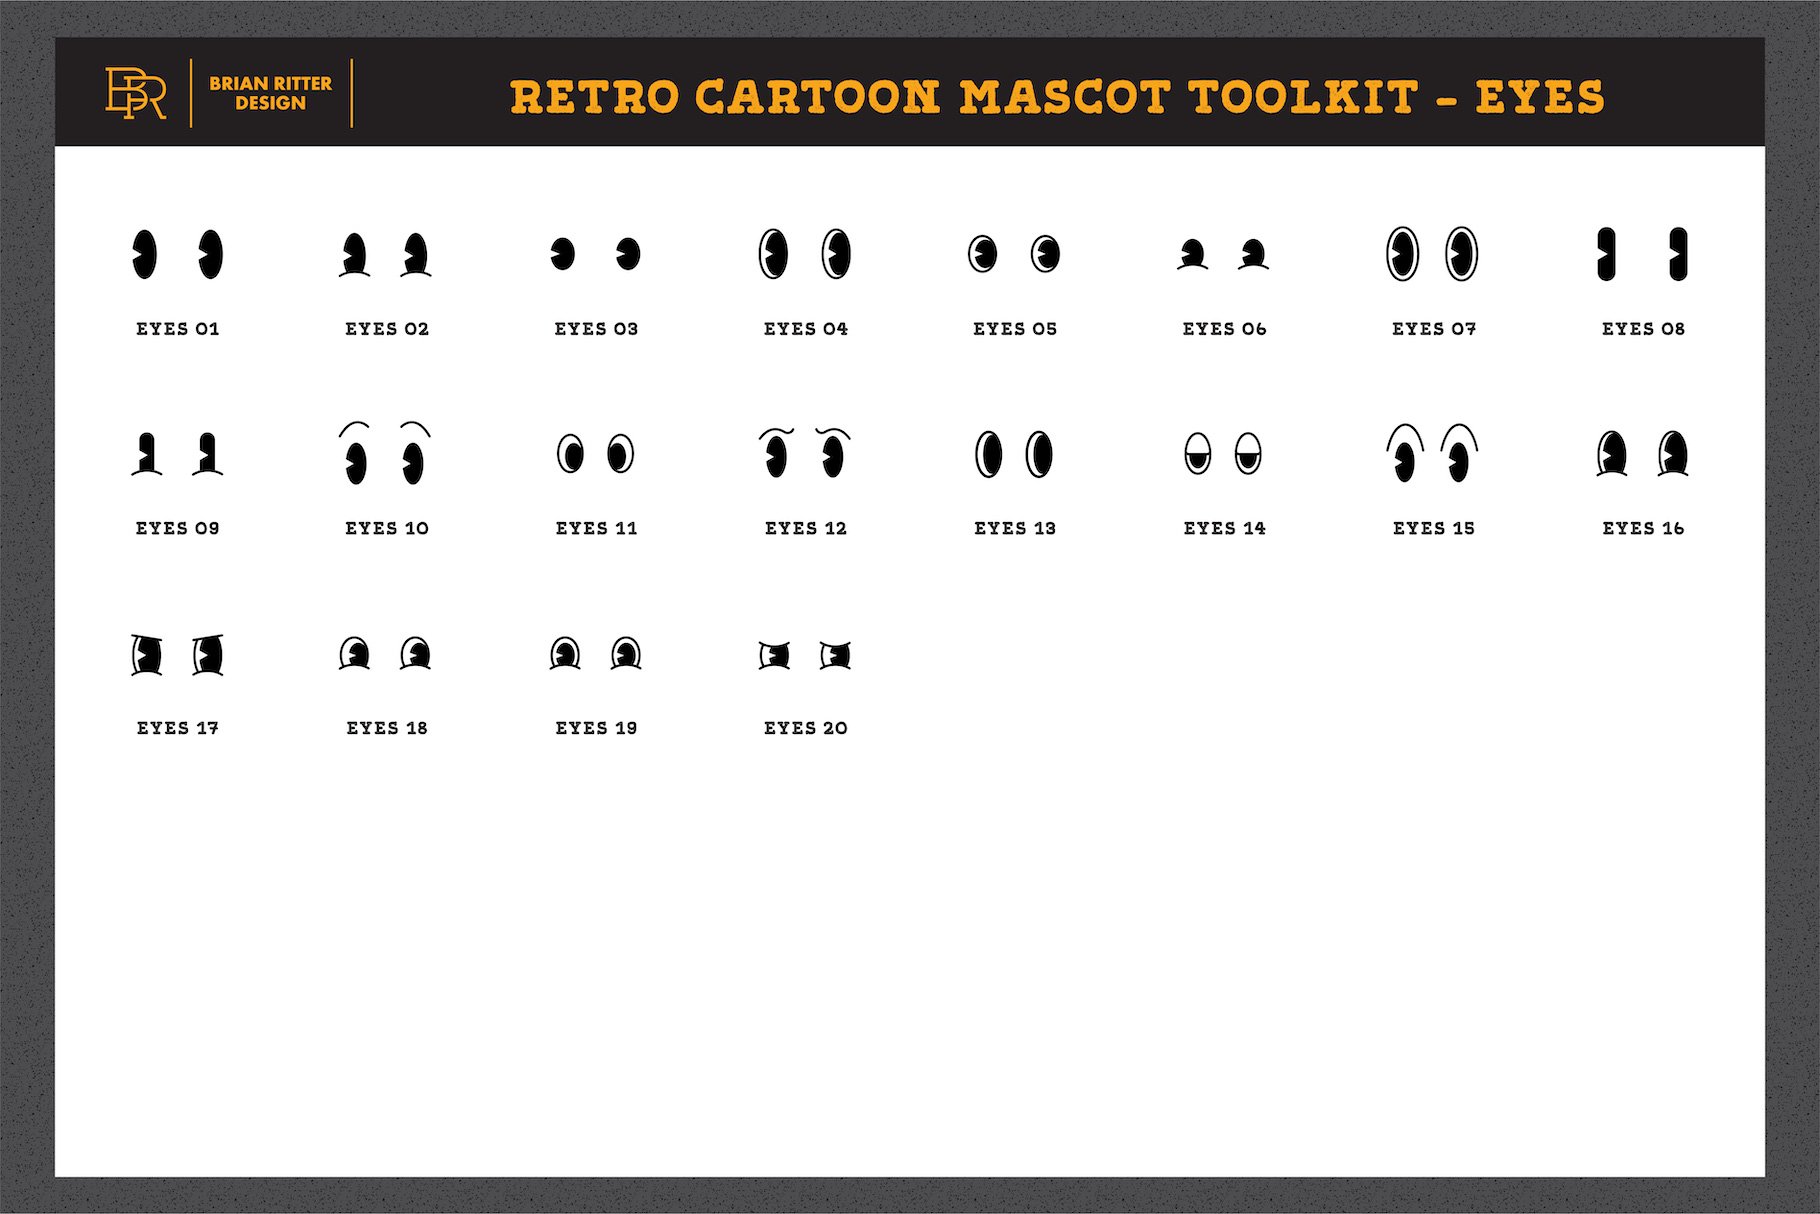 Retro cartoon mascot toolkit - eyes.